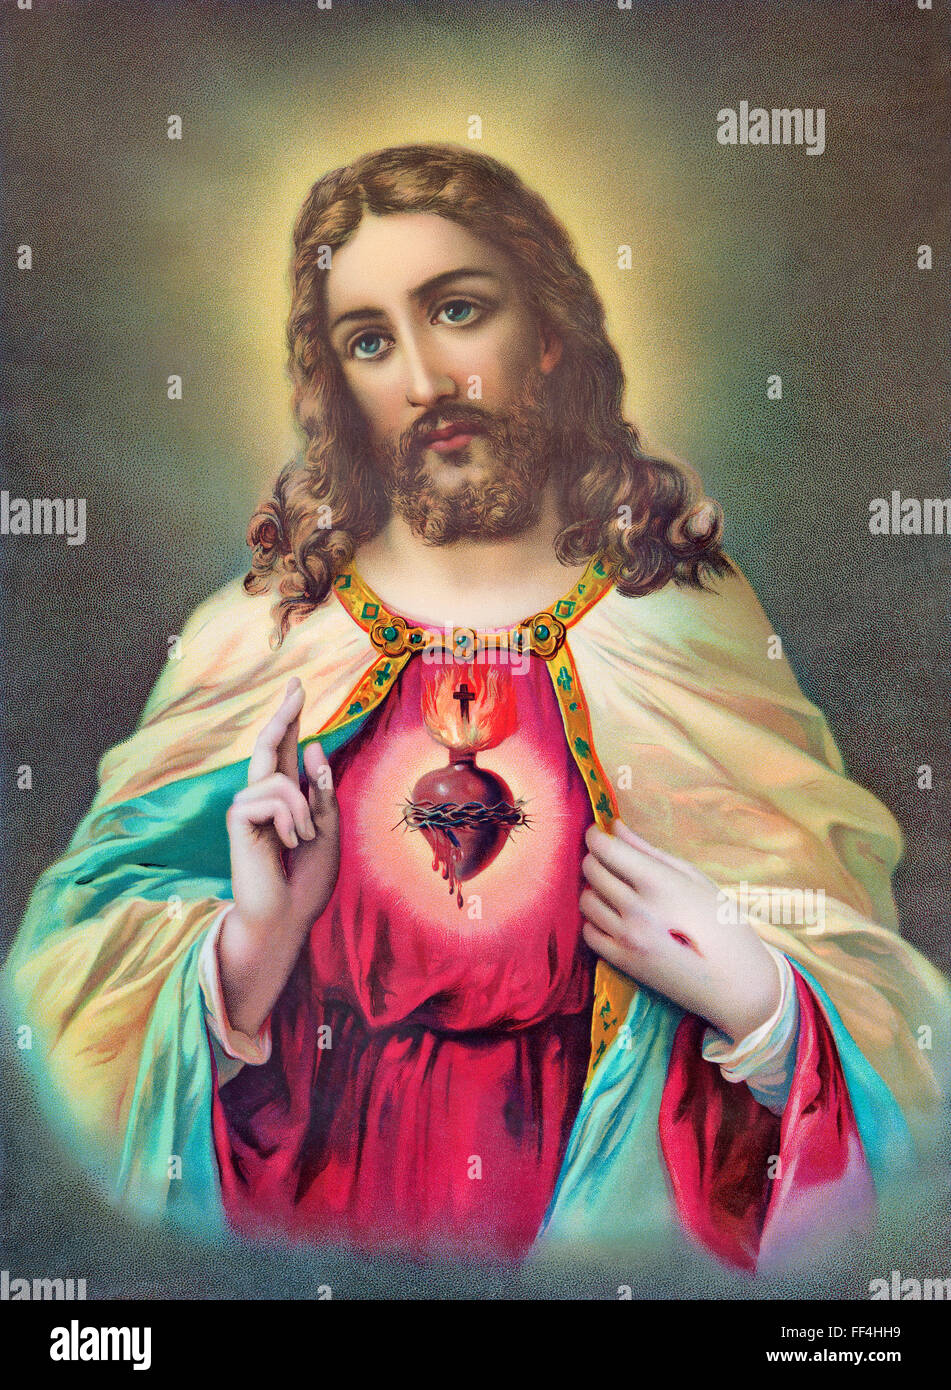 SEBECHLEBY, Eslovaquia - Julio 24, 2015: típico de la vieja imagen católica del corazón de Jesucristo, de Eslovaquia, por artista desconocido. Foto de stock